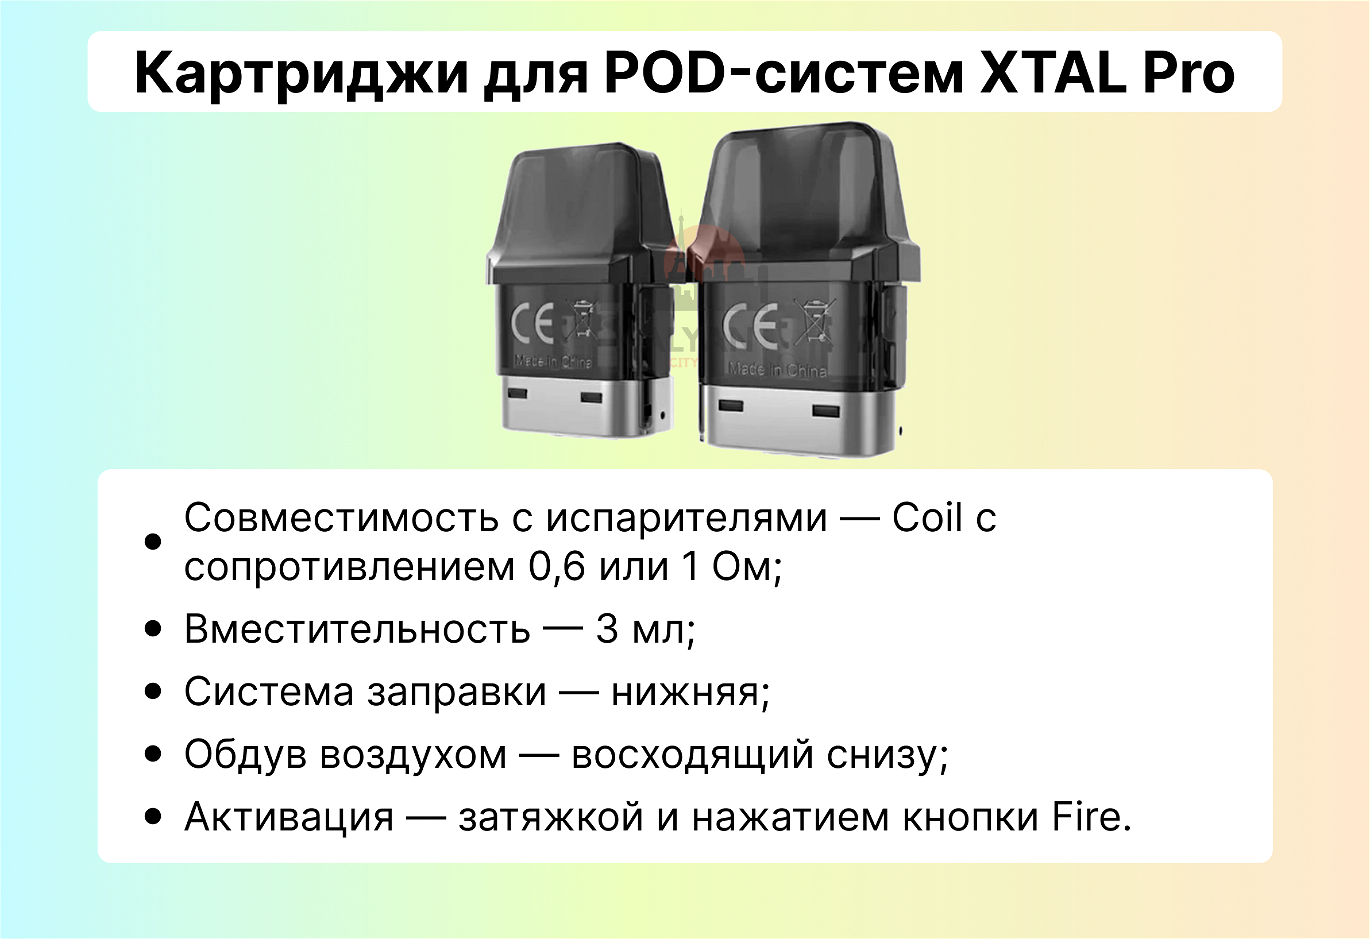 Картриджи для POD-систем XTAL Pro